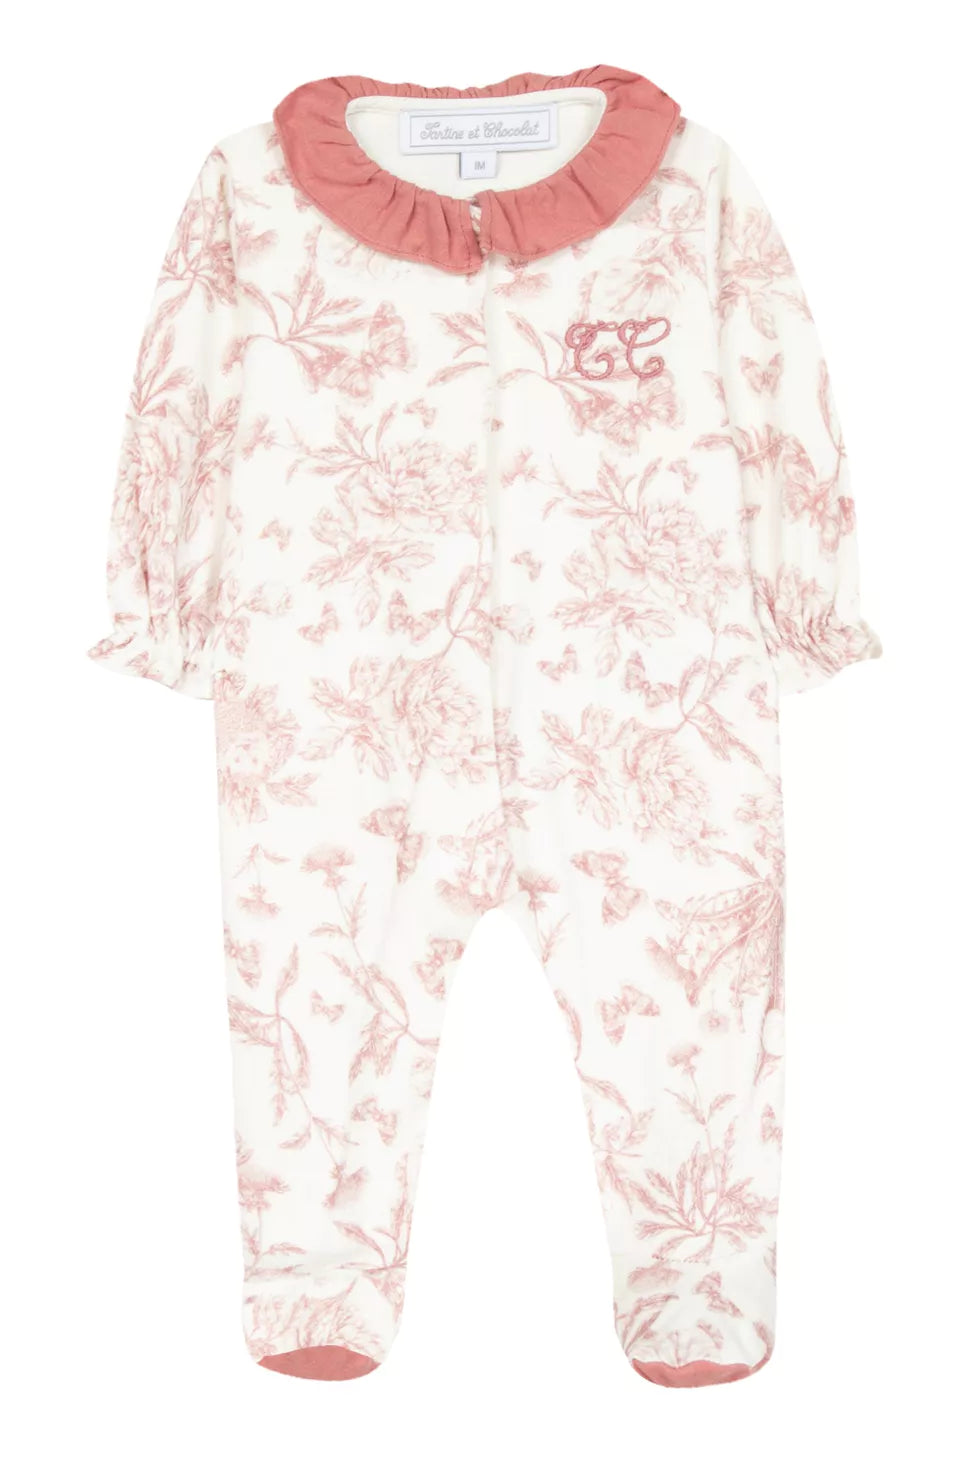 Tartine et Chocolat Pink Floral Pyjama | Lush nursery fabric